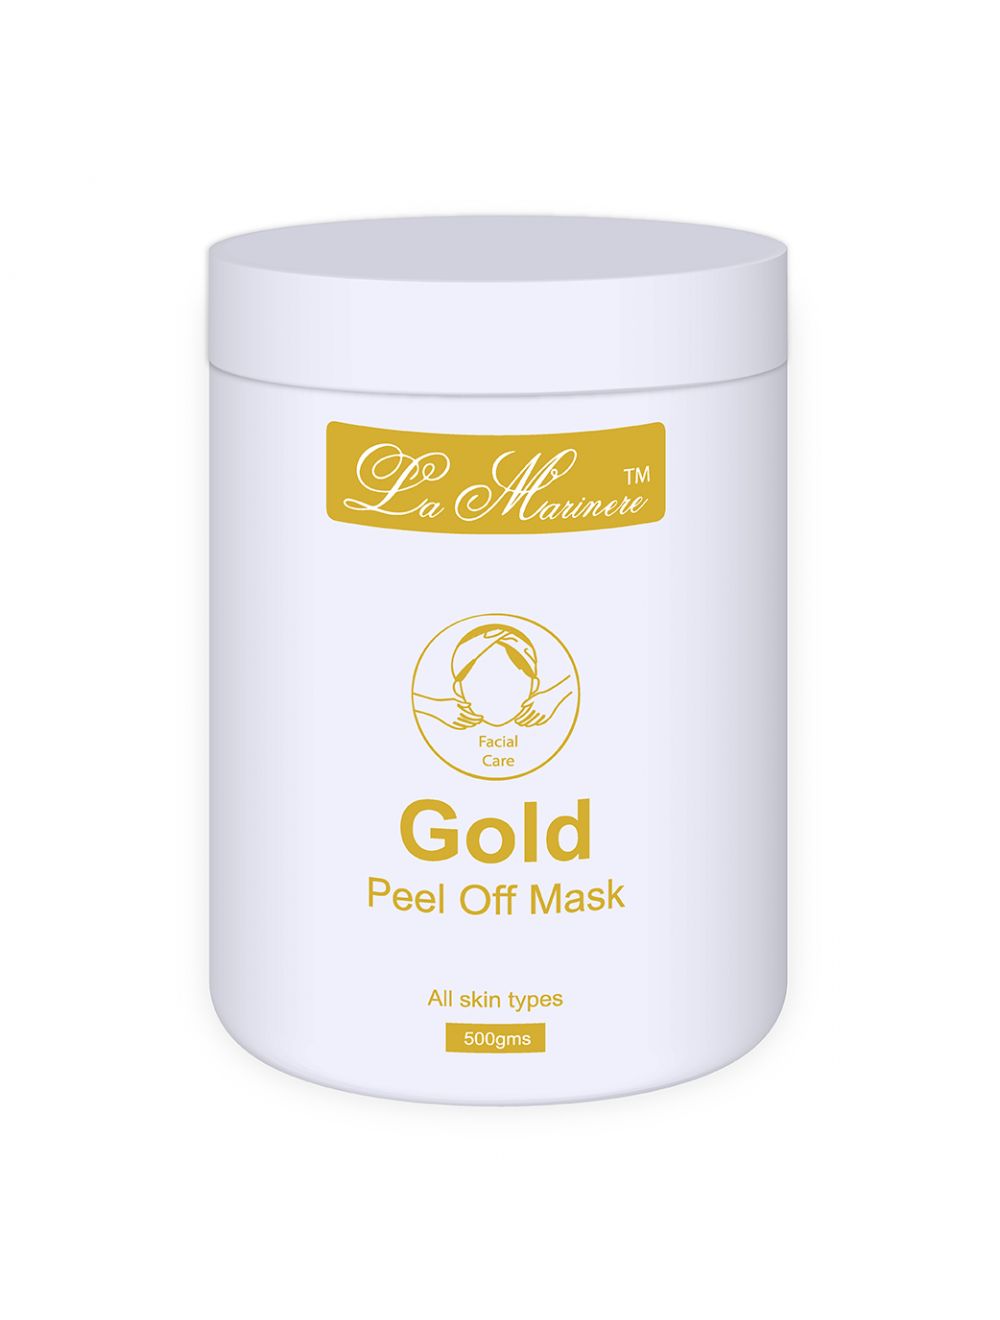 La Marinere Gold Peel Off Mask (500gm) - Niram